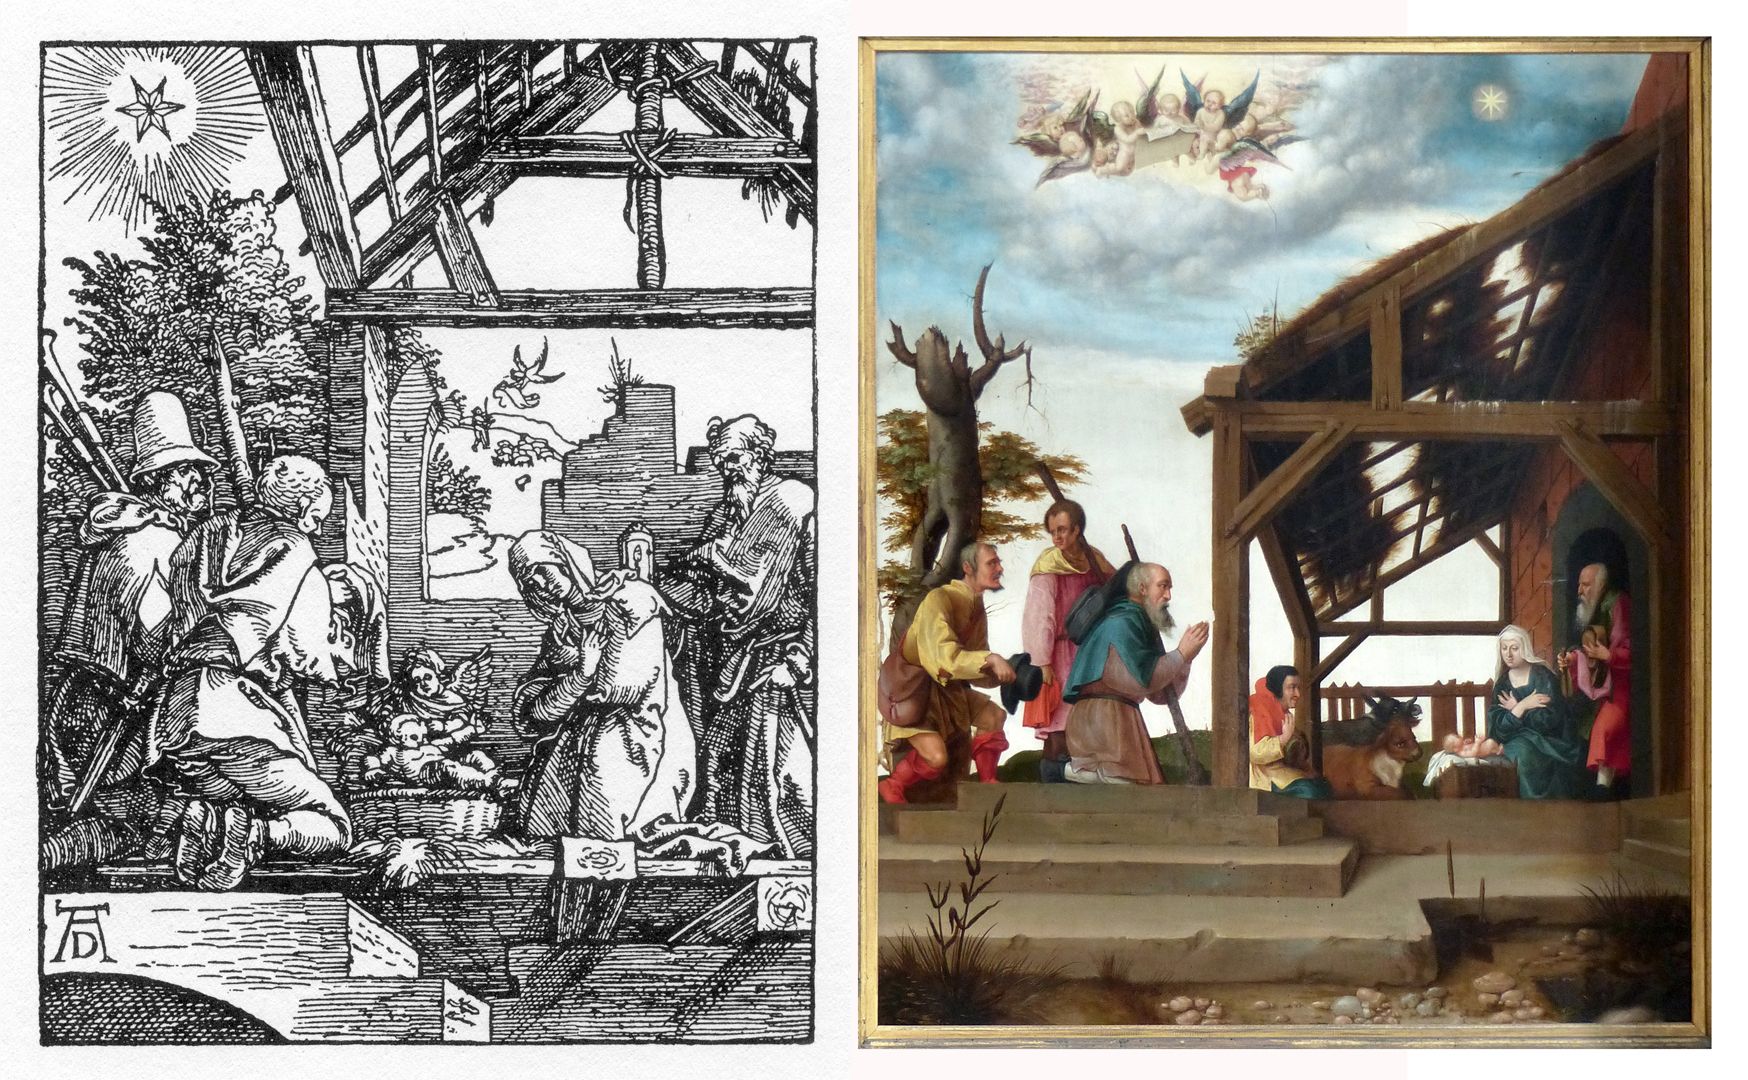 Dürer's foundation plaque Comparison images, details from: Dürer, The Little Passion, 1509 - 1511, Birth of Jesus